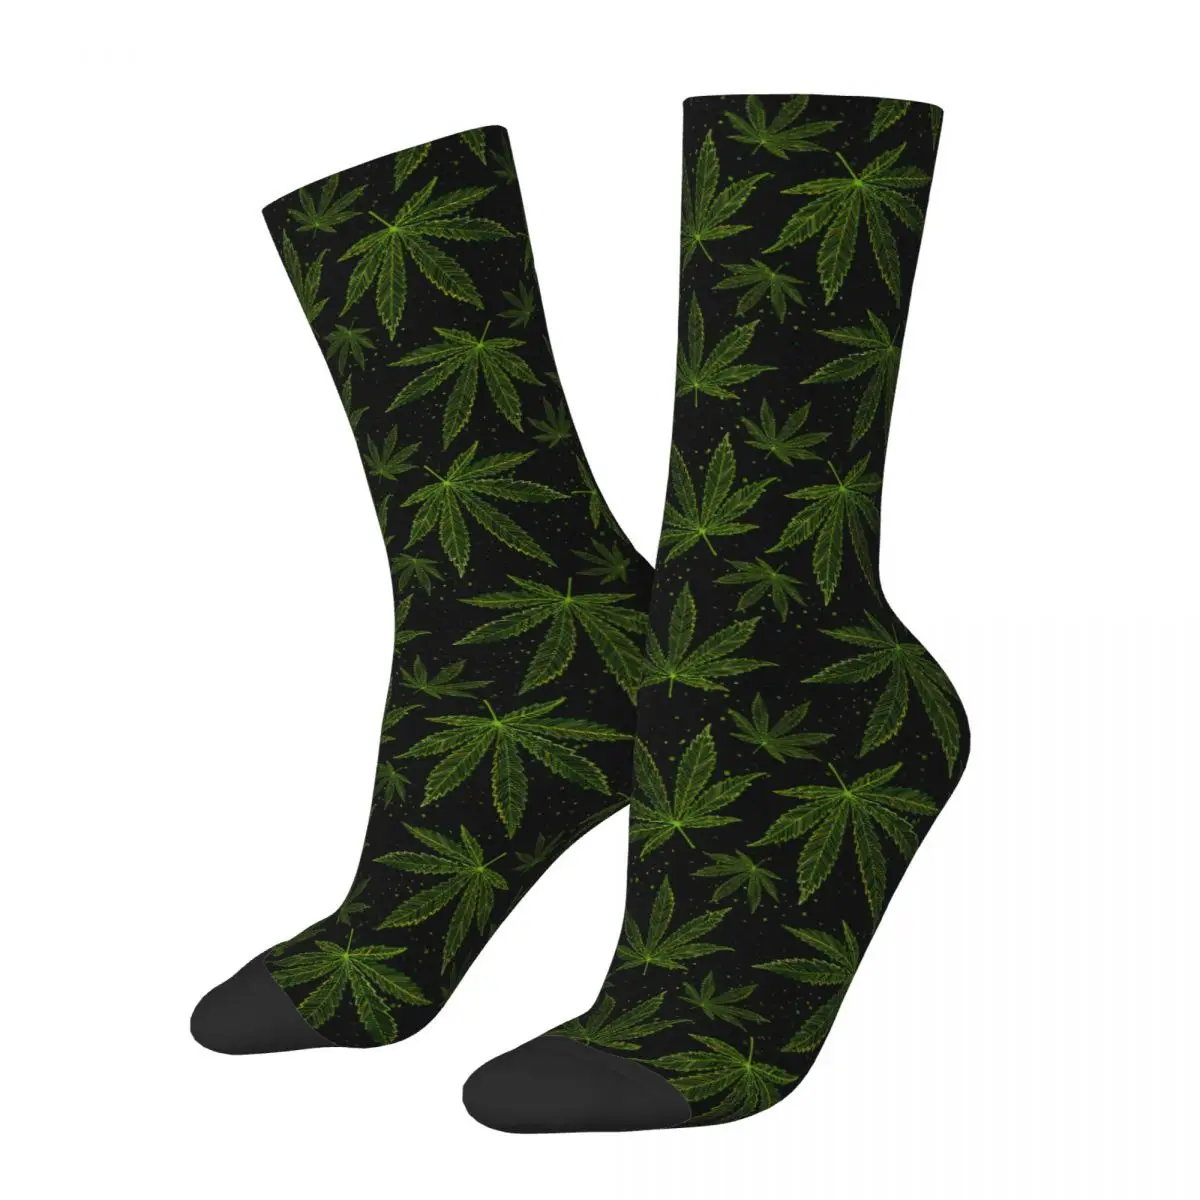 

Носки унисекс смешные с принтом листьев конопли, носки из полиэстера с рисунком марихуаны, листьев марихуаны, весна-лето-осень-зима